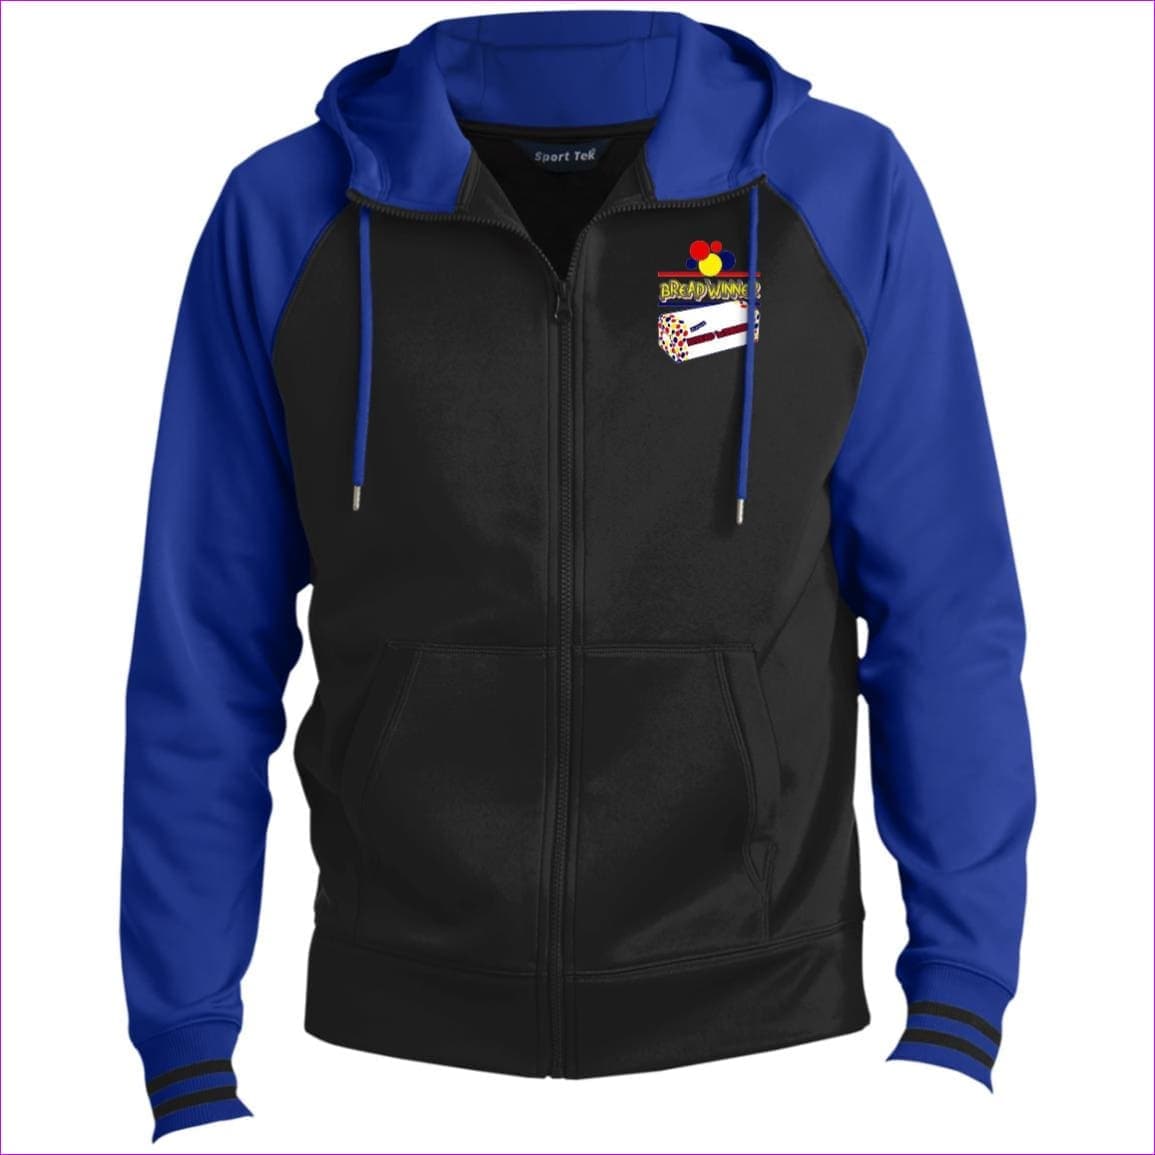 Black/True Royal Bread Winner Men's Sport-Wick® Full-Zip Hooded Jacket - Men's Jackets at TFC&H Co.